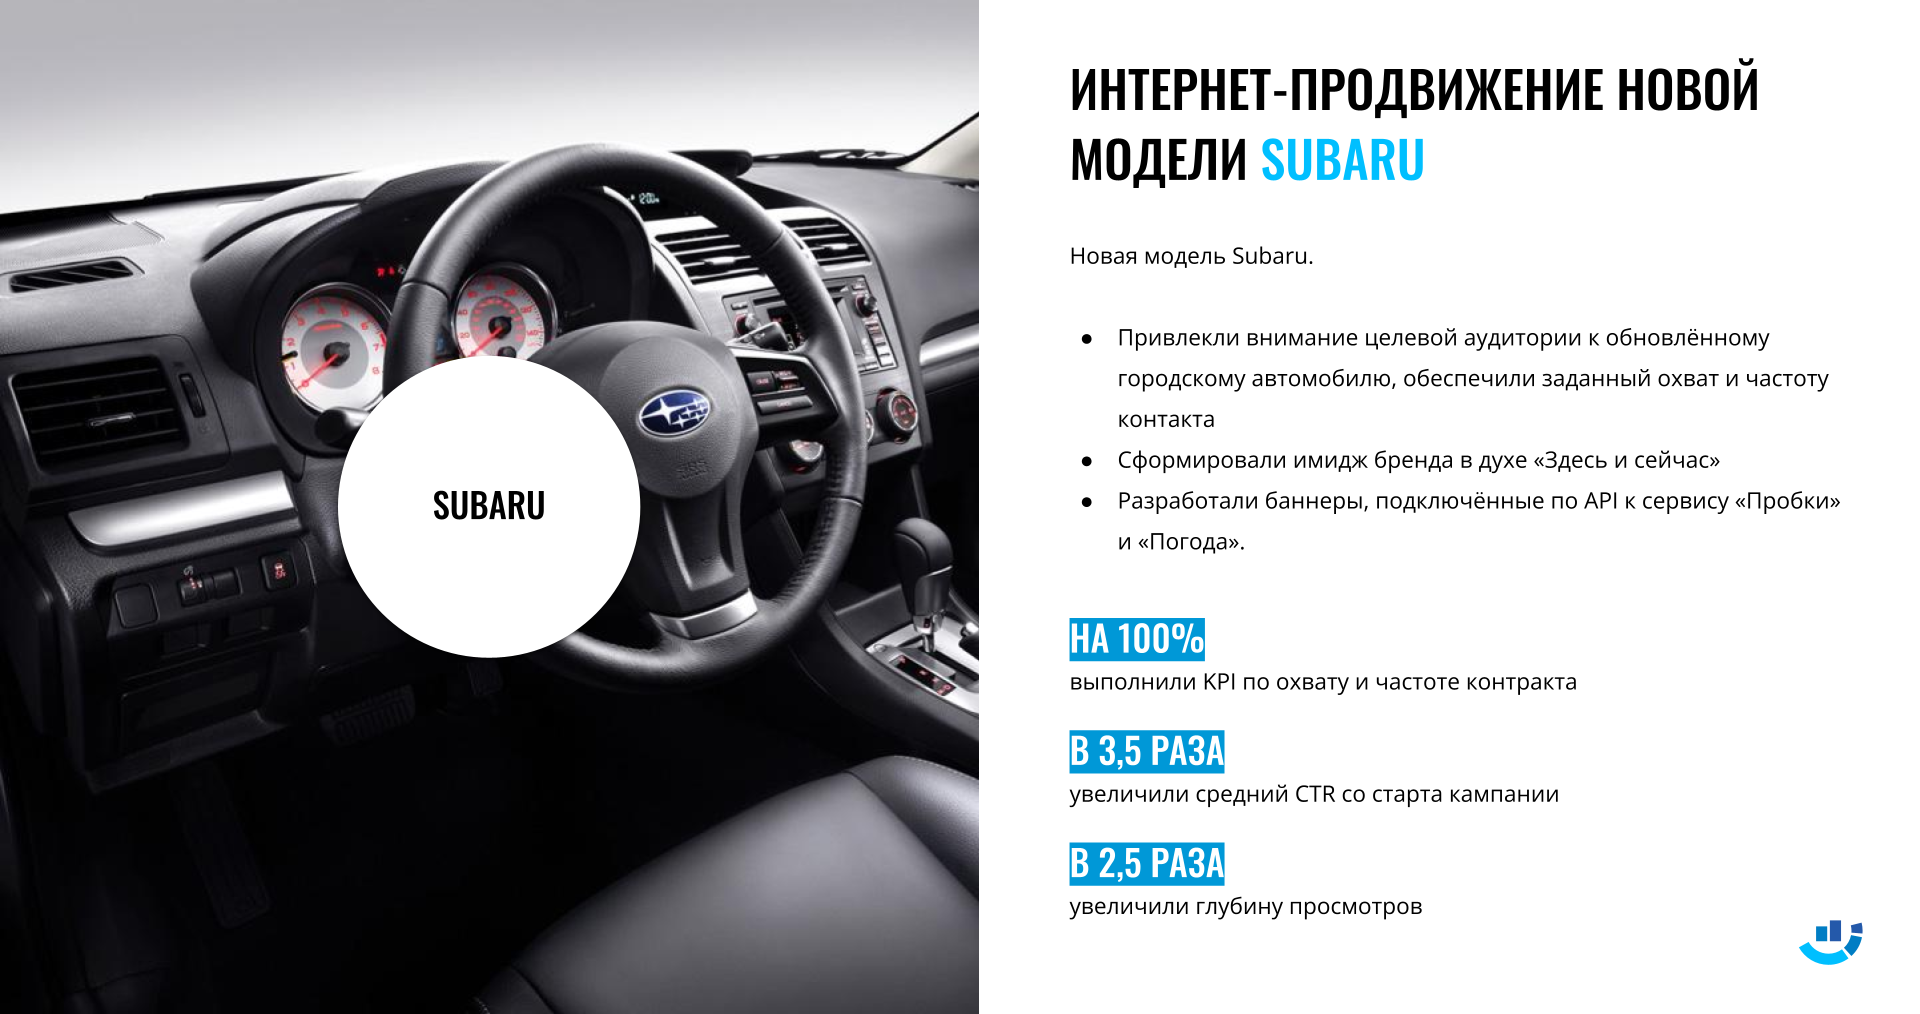 Кейс Автомобильный бренд. Интернет-продвижение новой модели Subaru